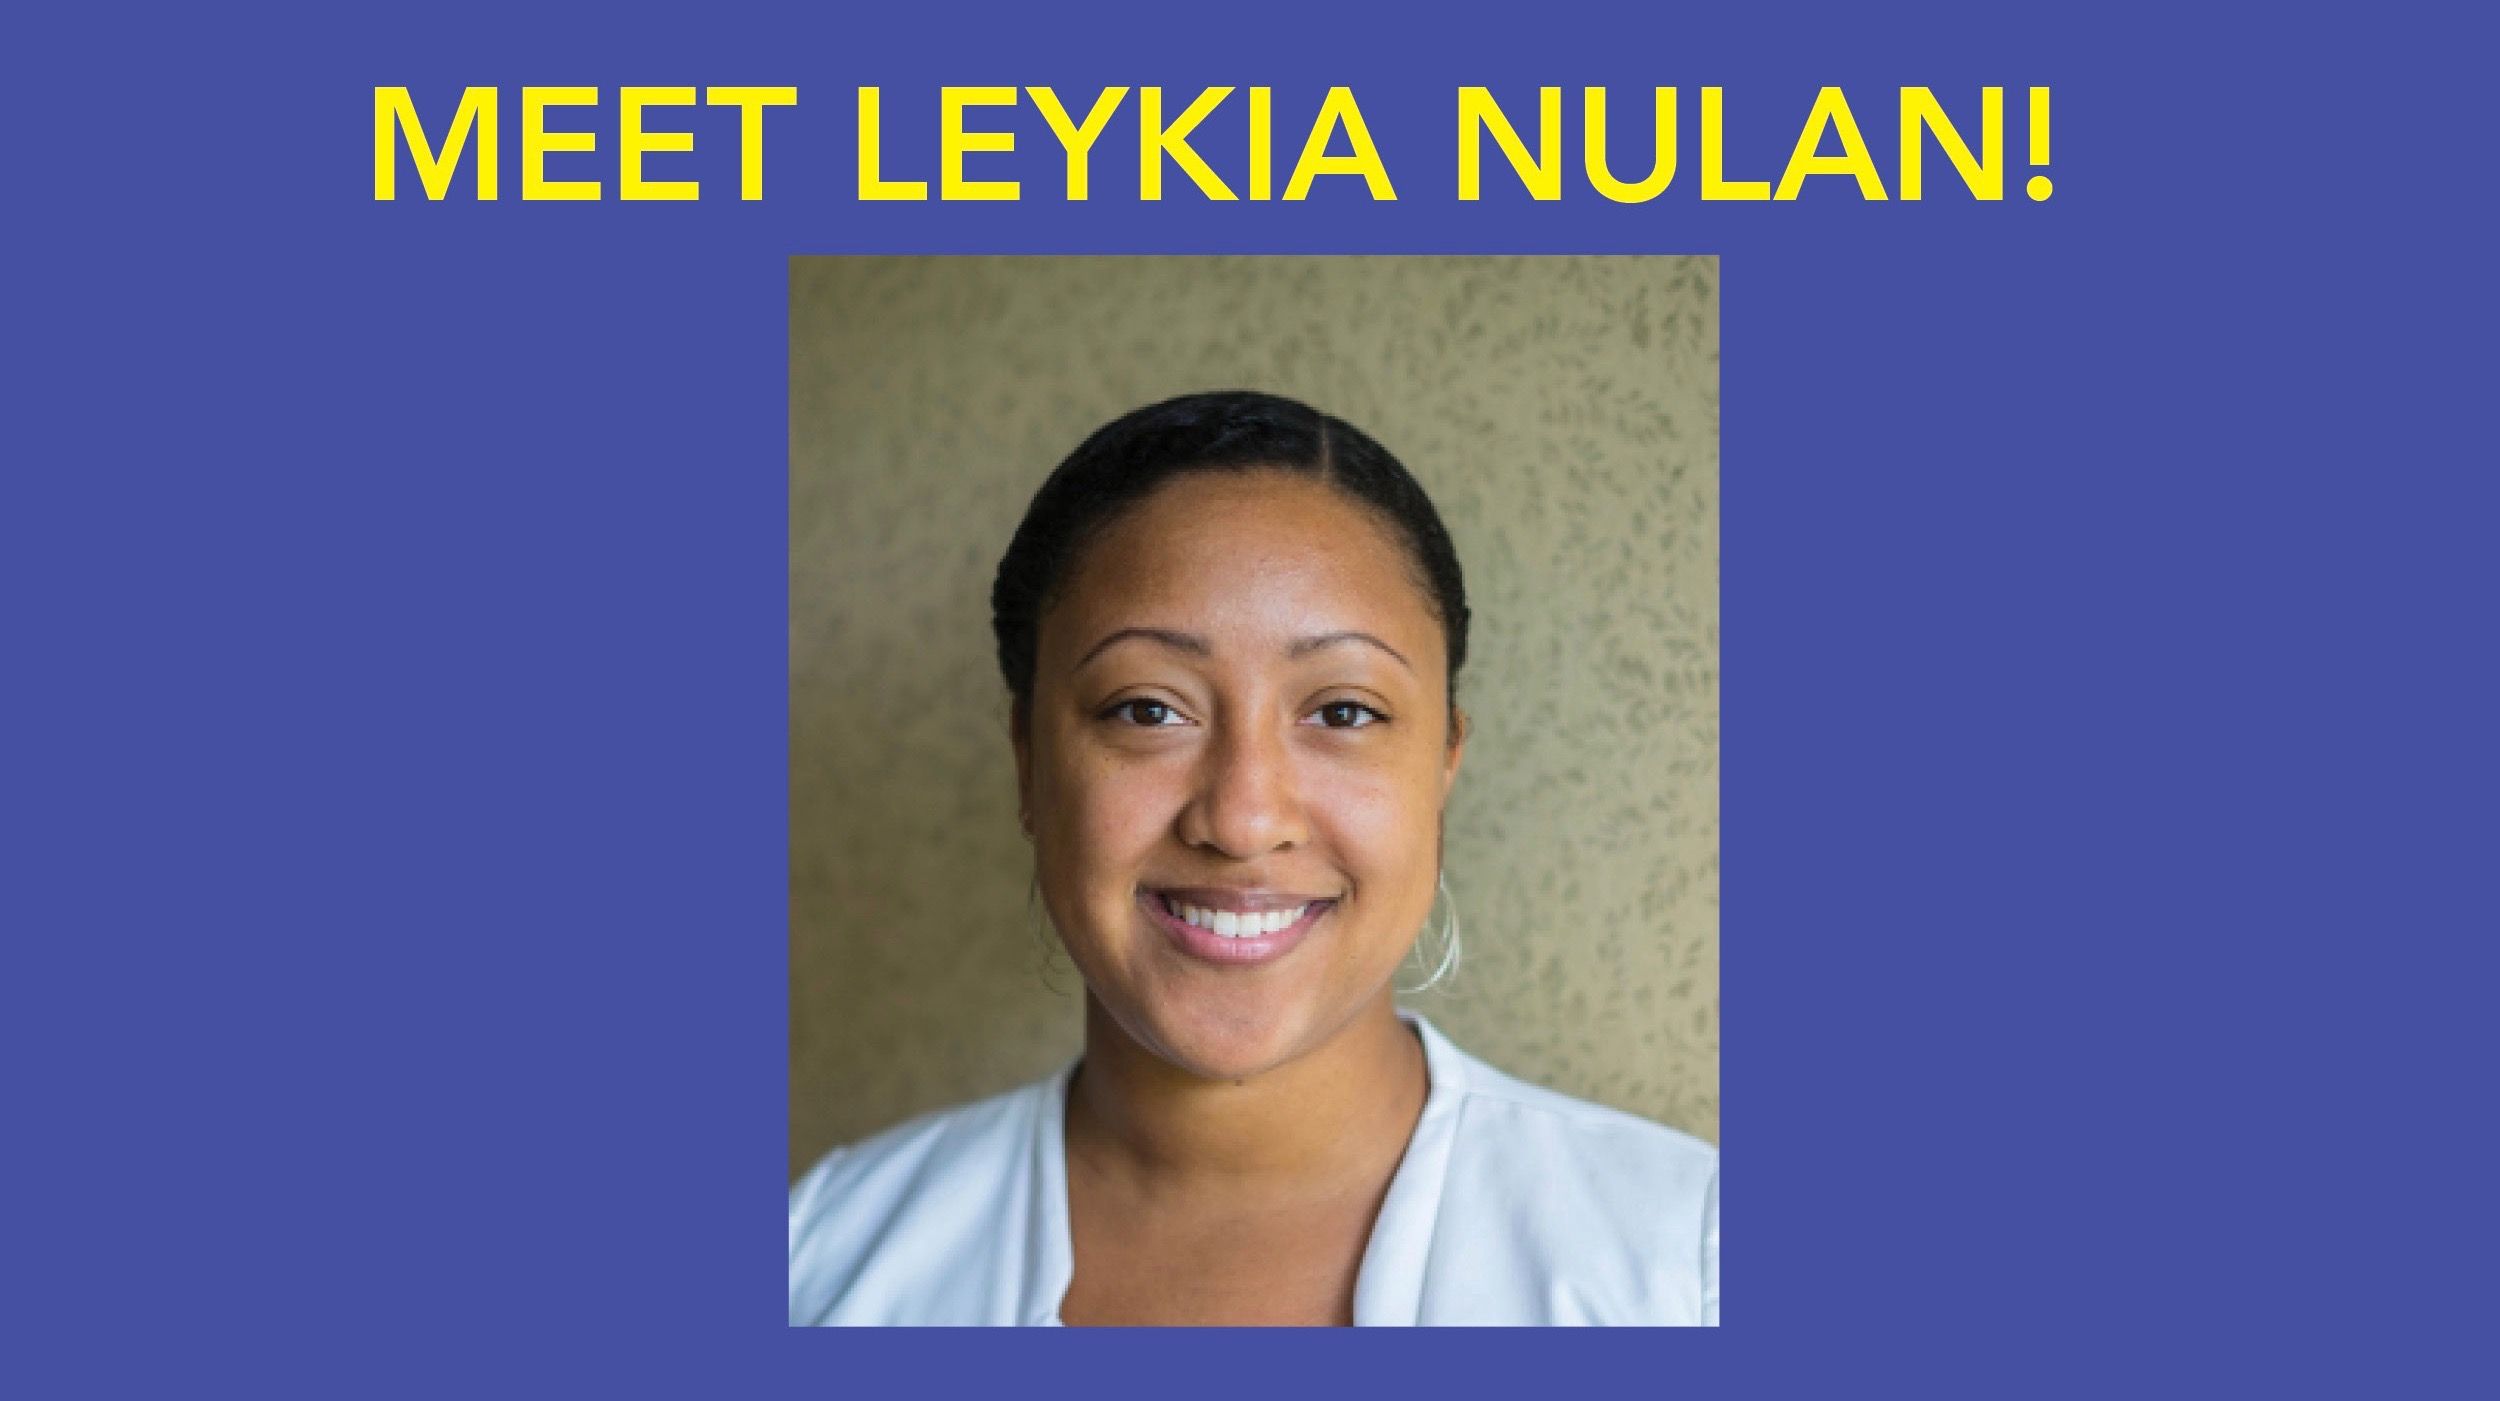 Meet Leykia Nulan